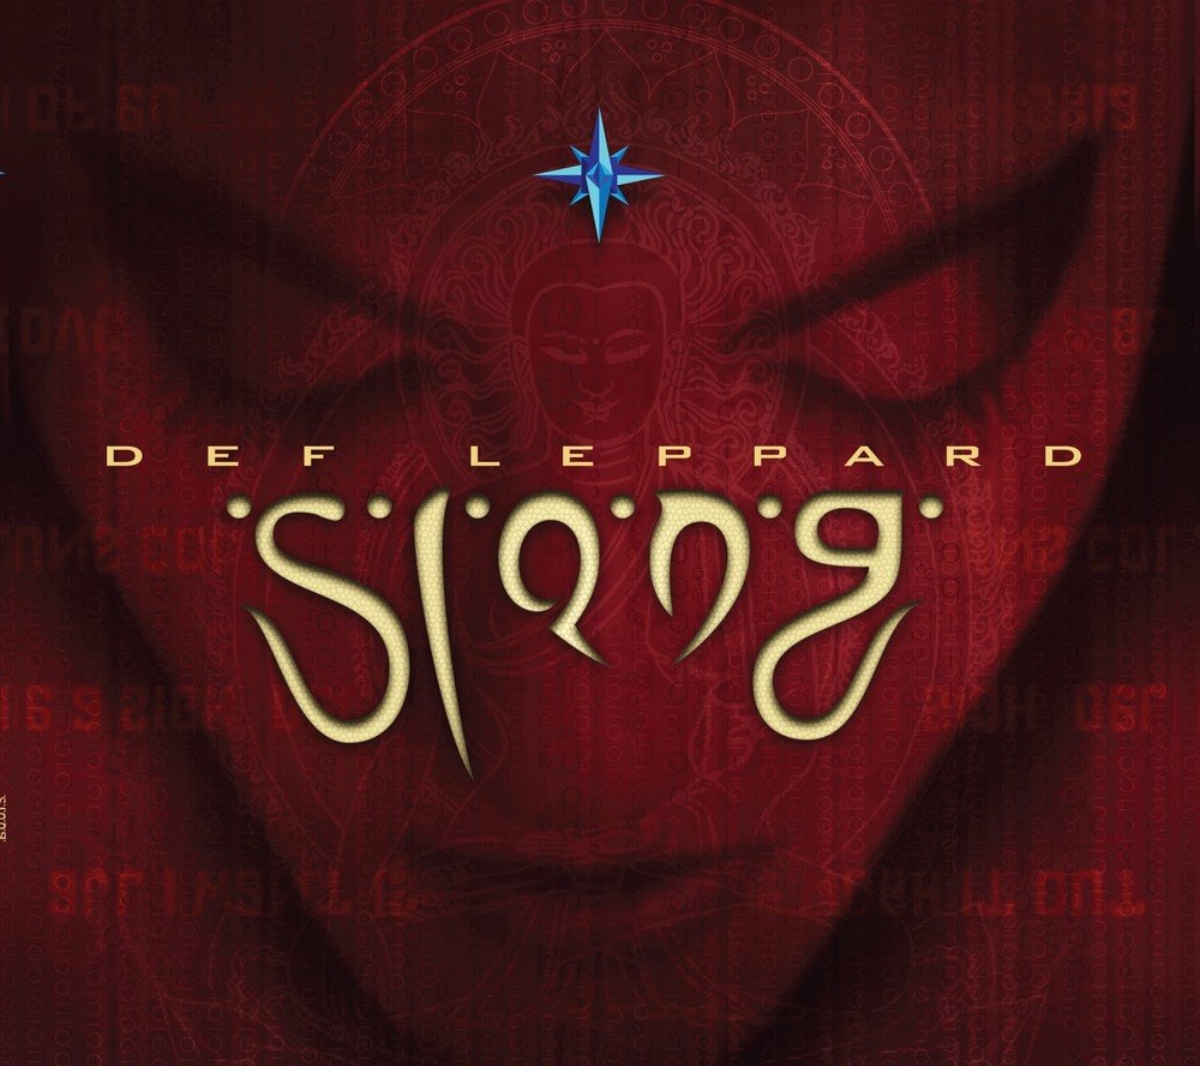 La couverture de l'album "Slang" de Def Leppard.